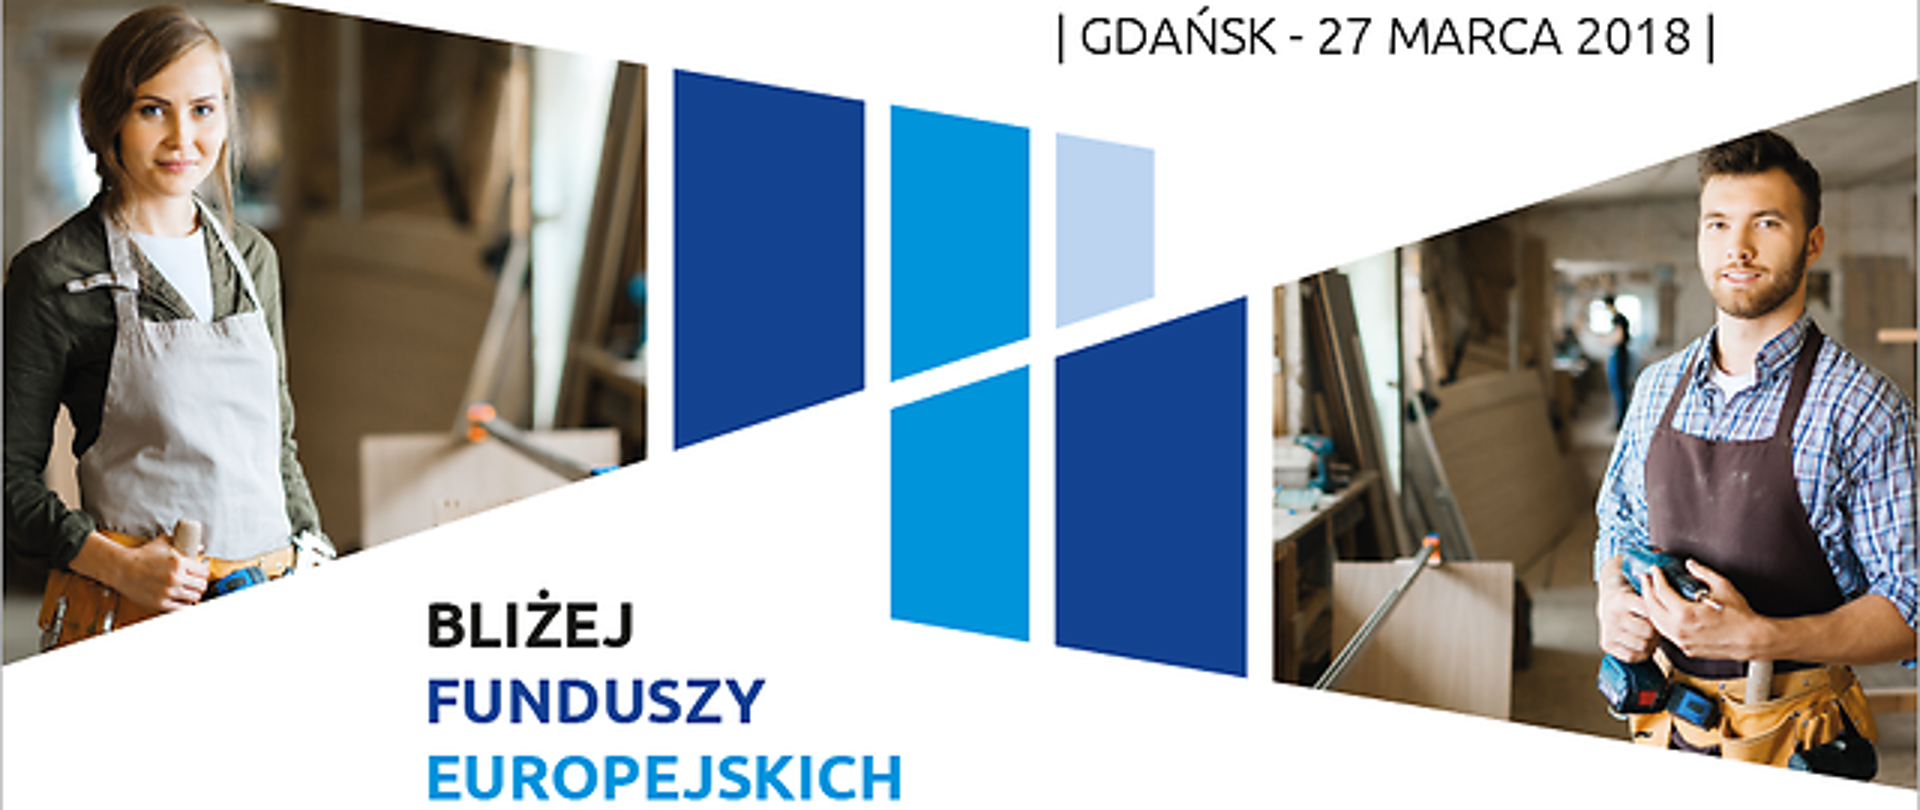 Zaproszenie na konferencję "Bliżej Funduszy Europejskich" w Gdańsku.